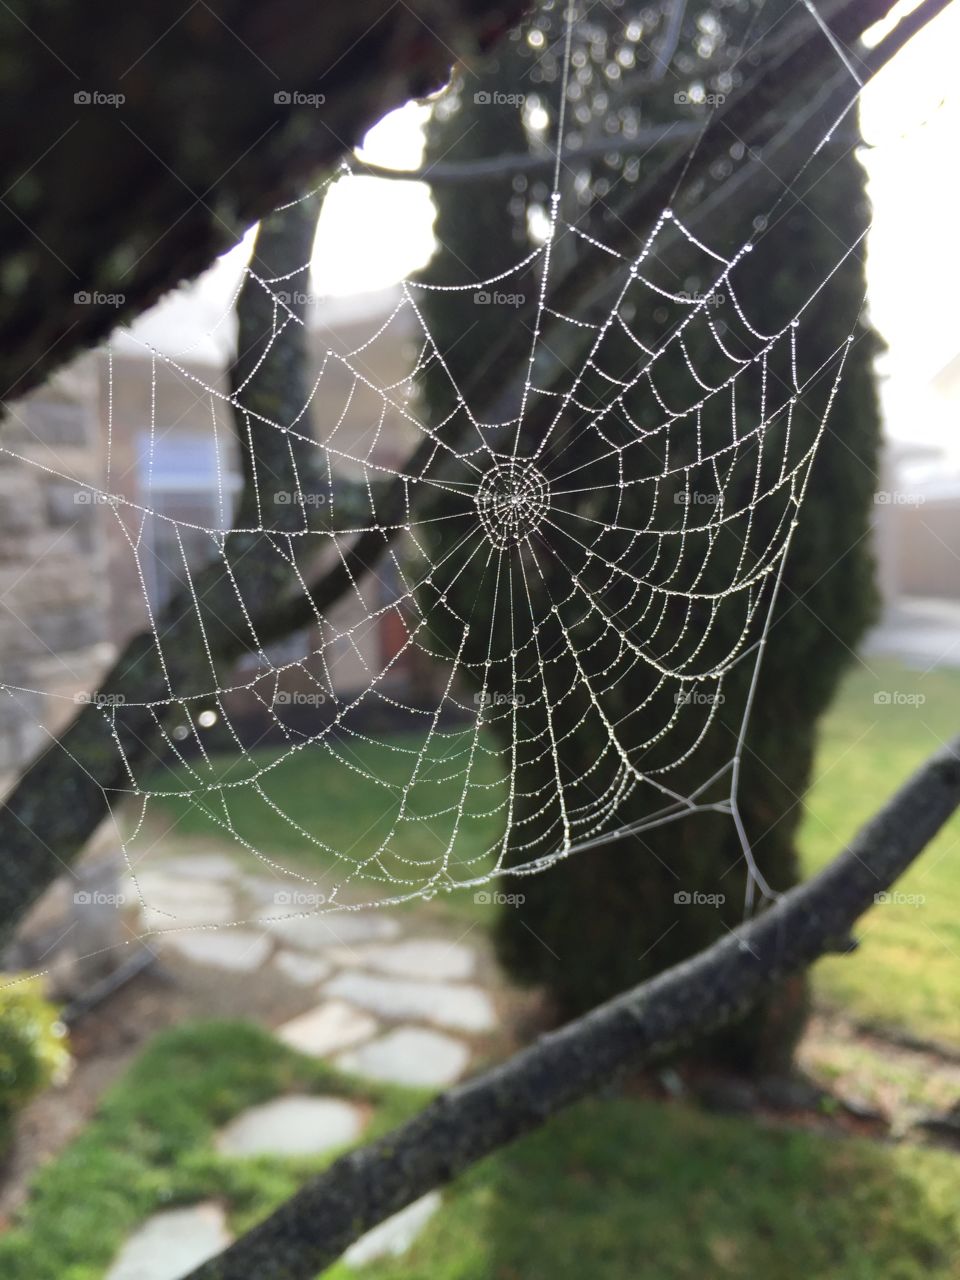 Winter spider web. 